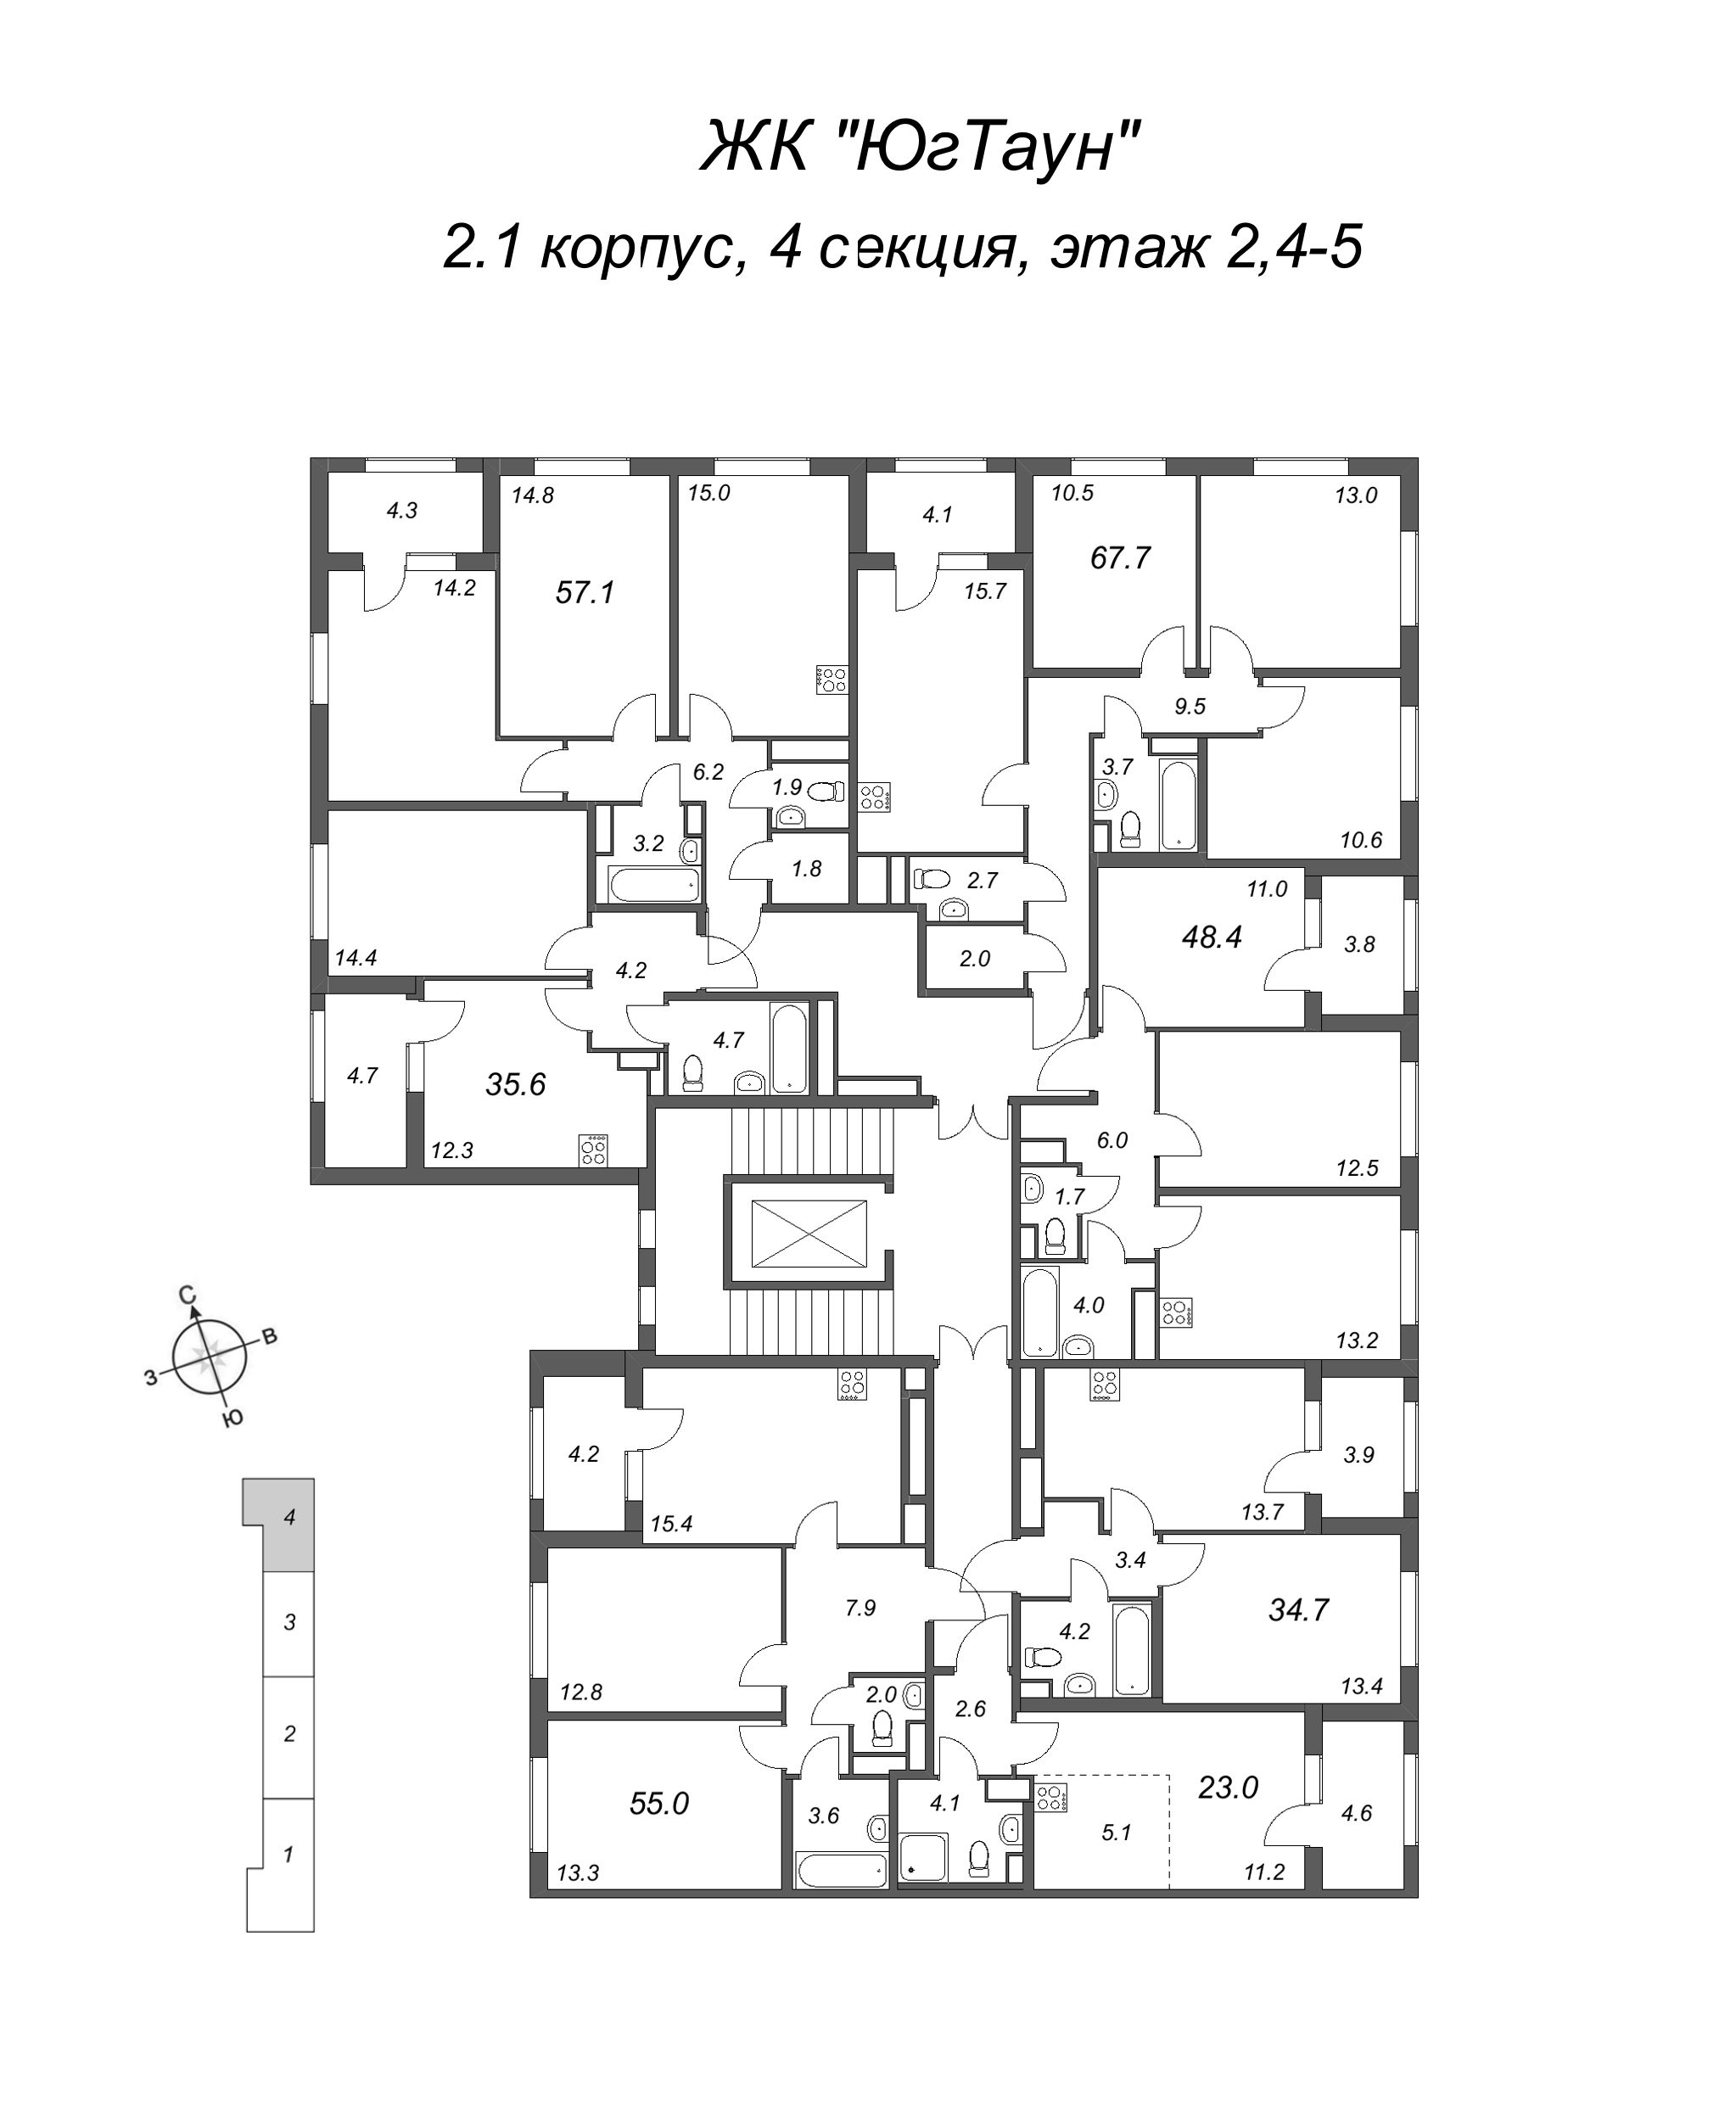 Квартира-студия, 23 м² в ЖК "ЮгТаун" - планировка этажа